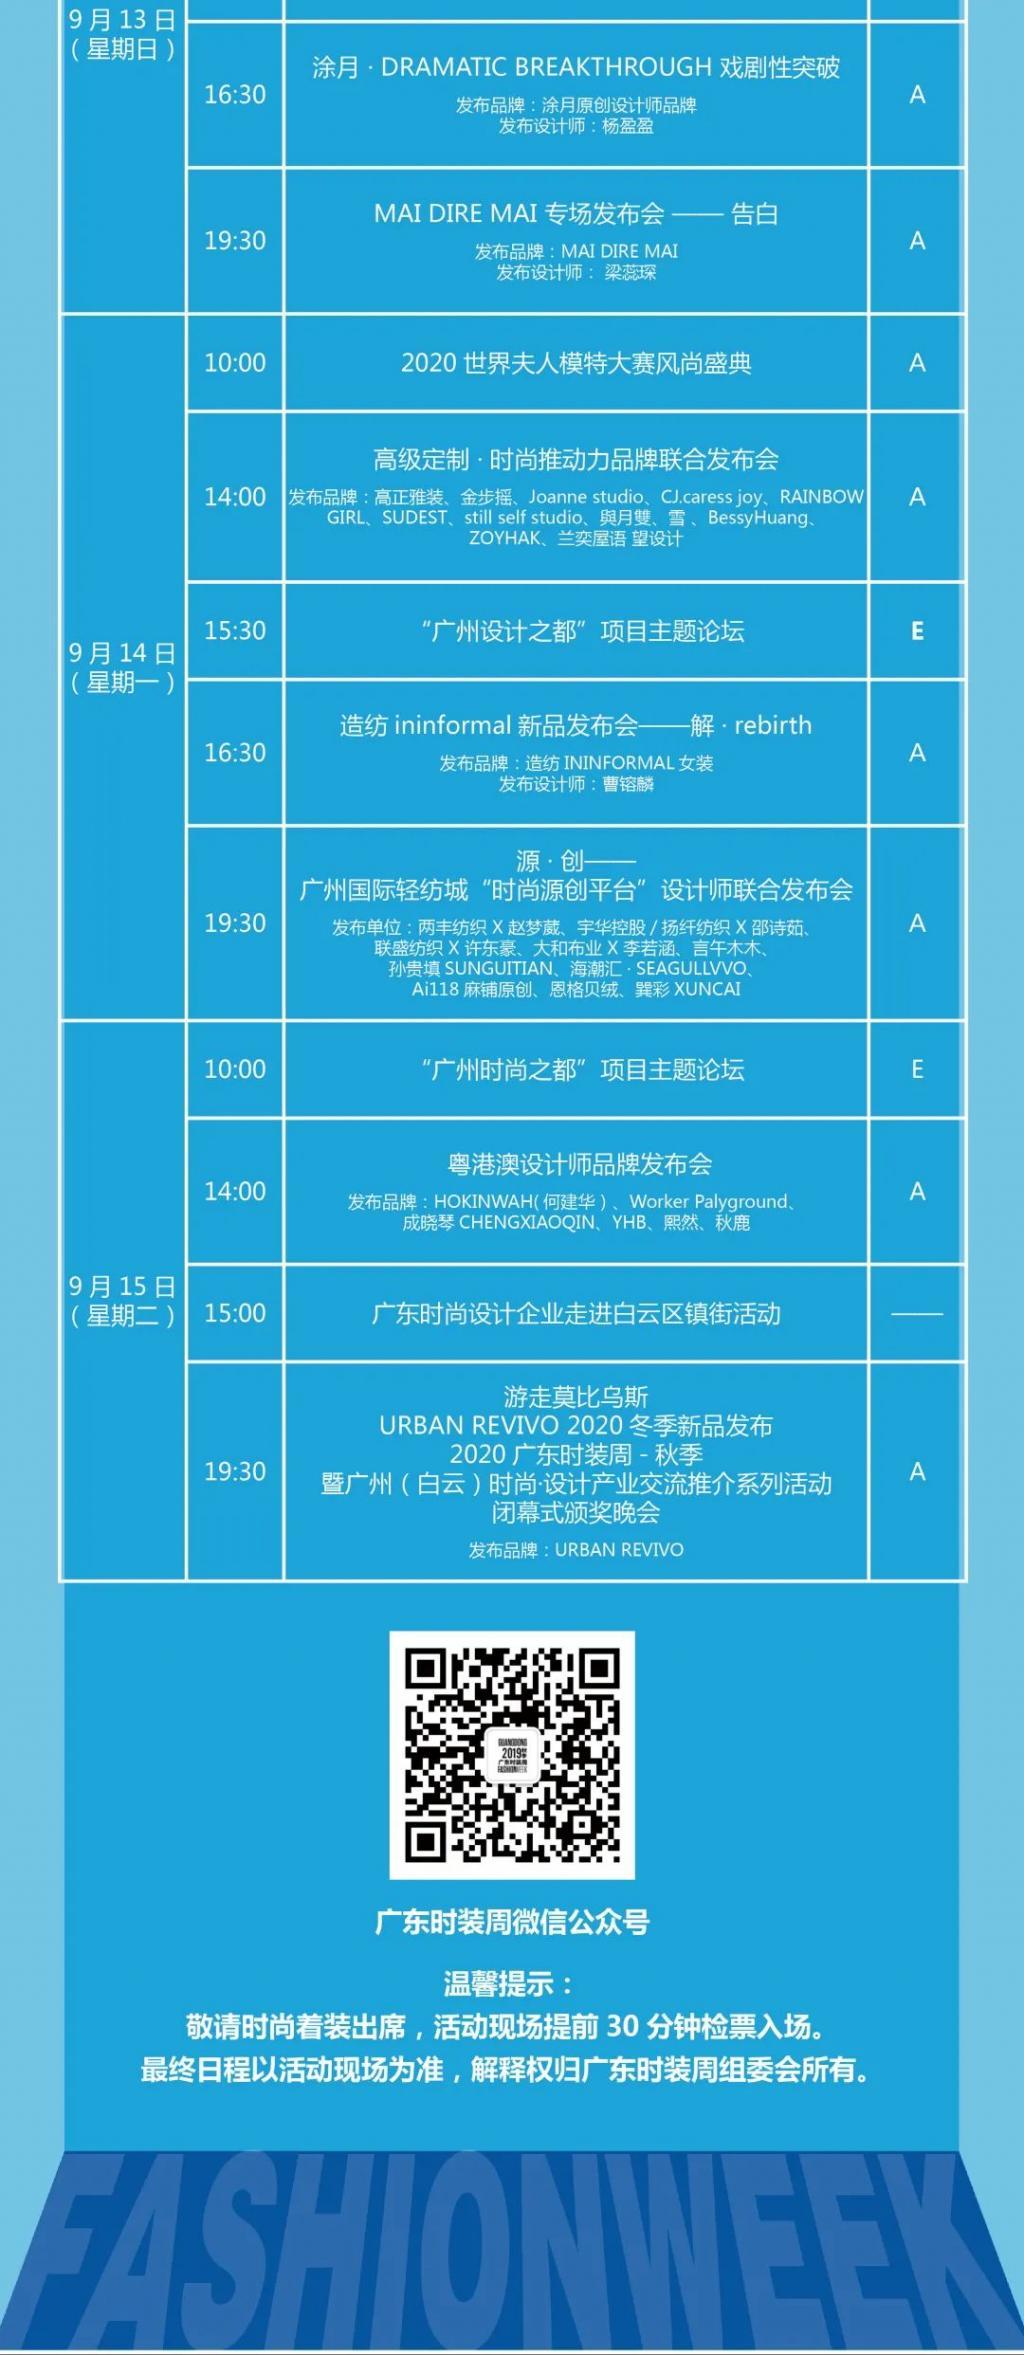 2020广东时装周-秋季日程表正式发布